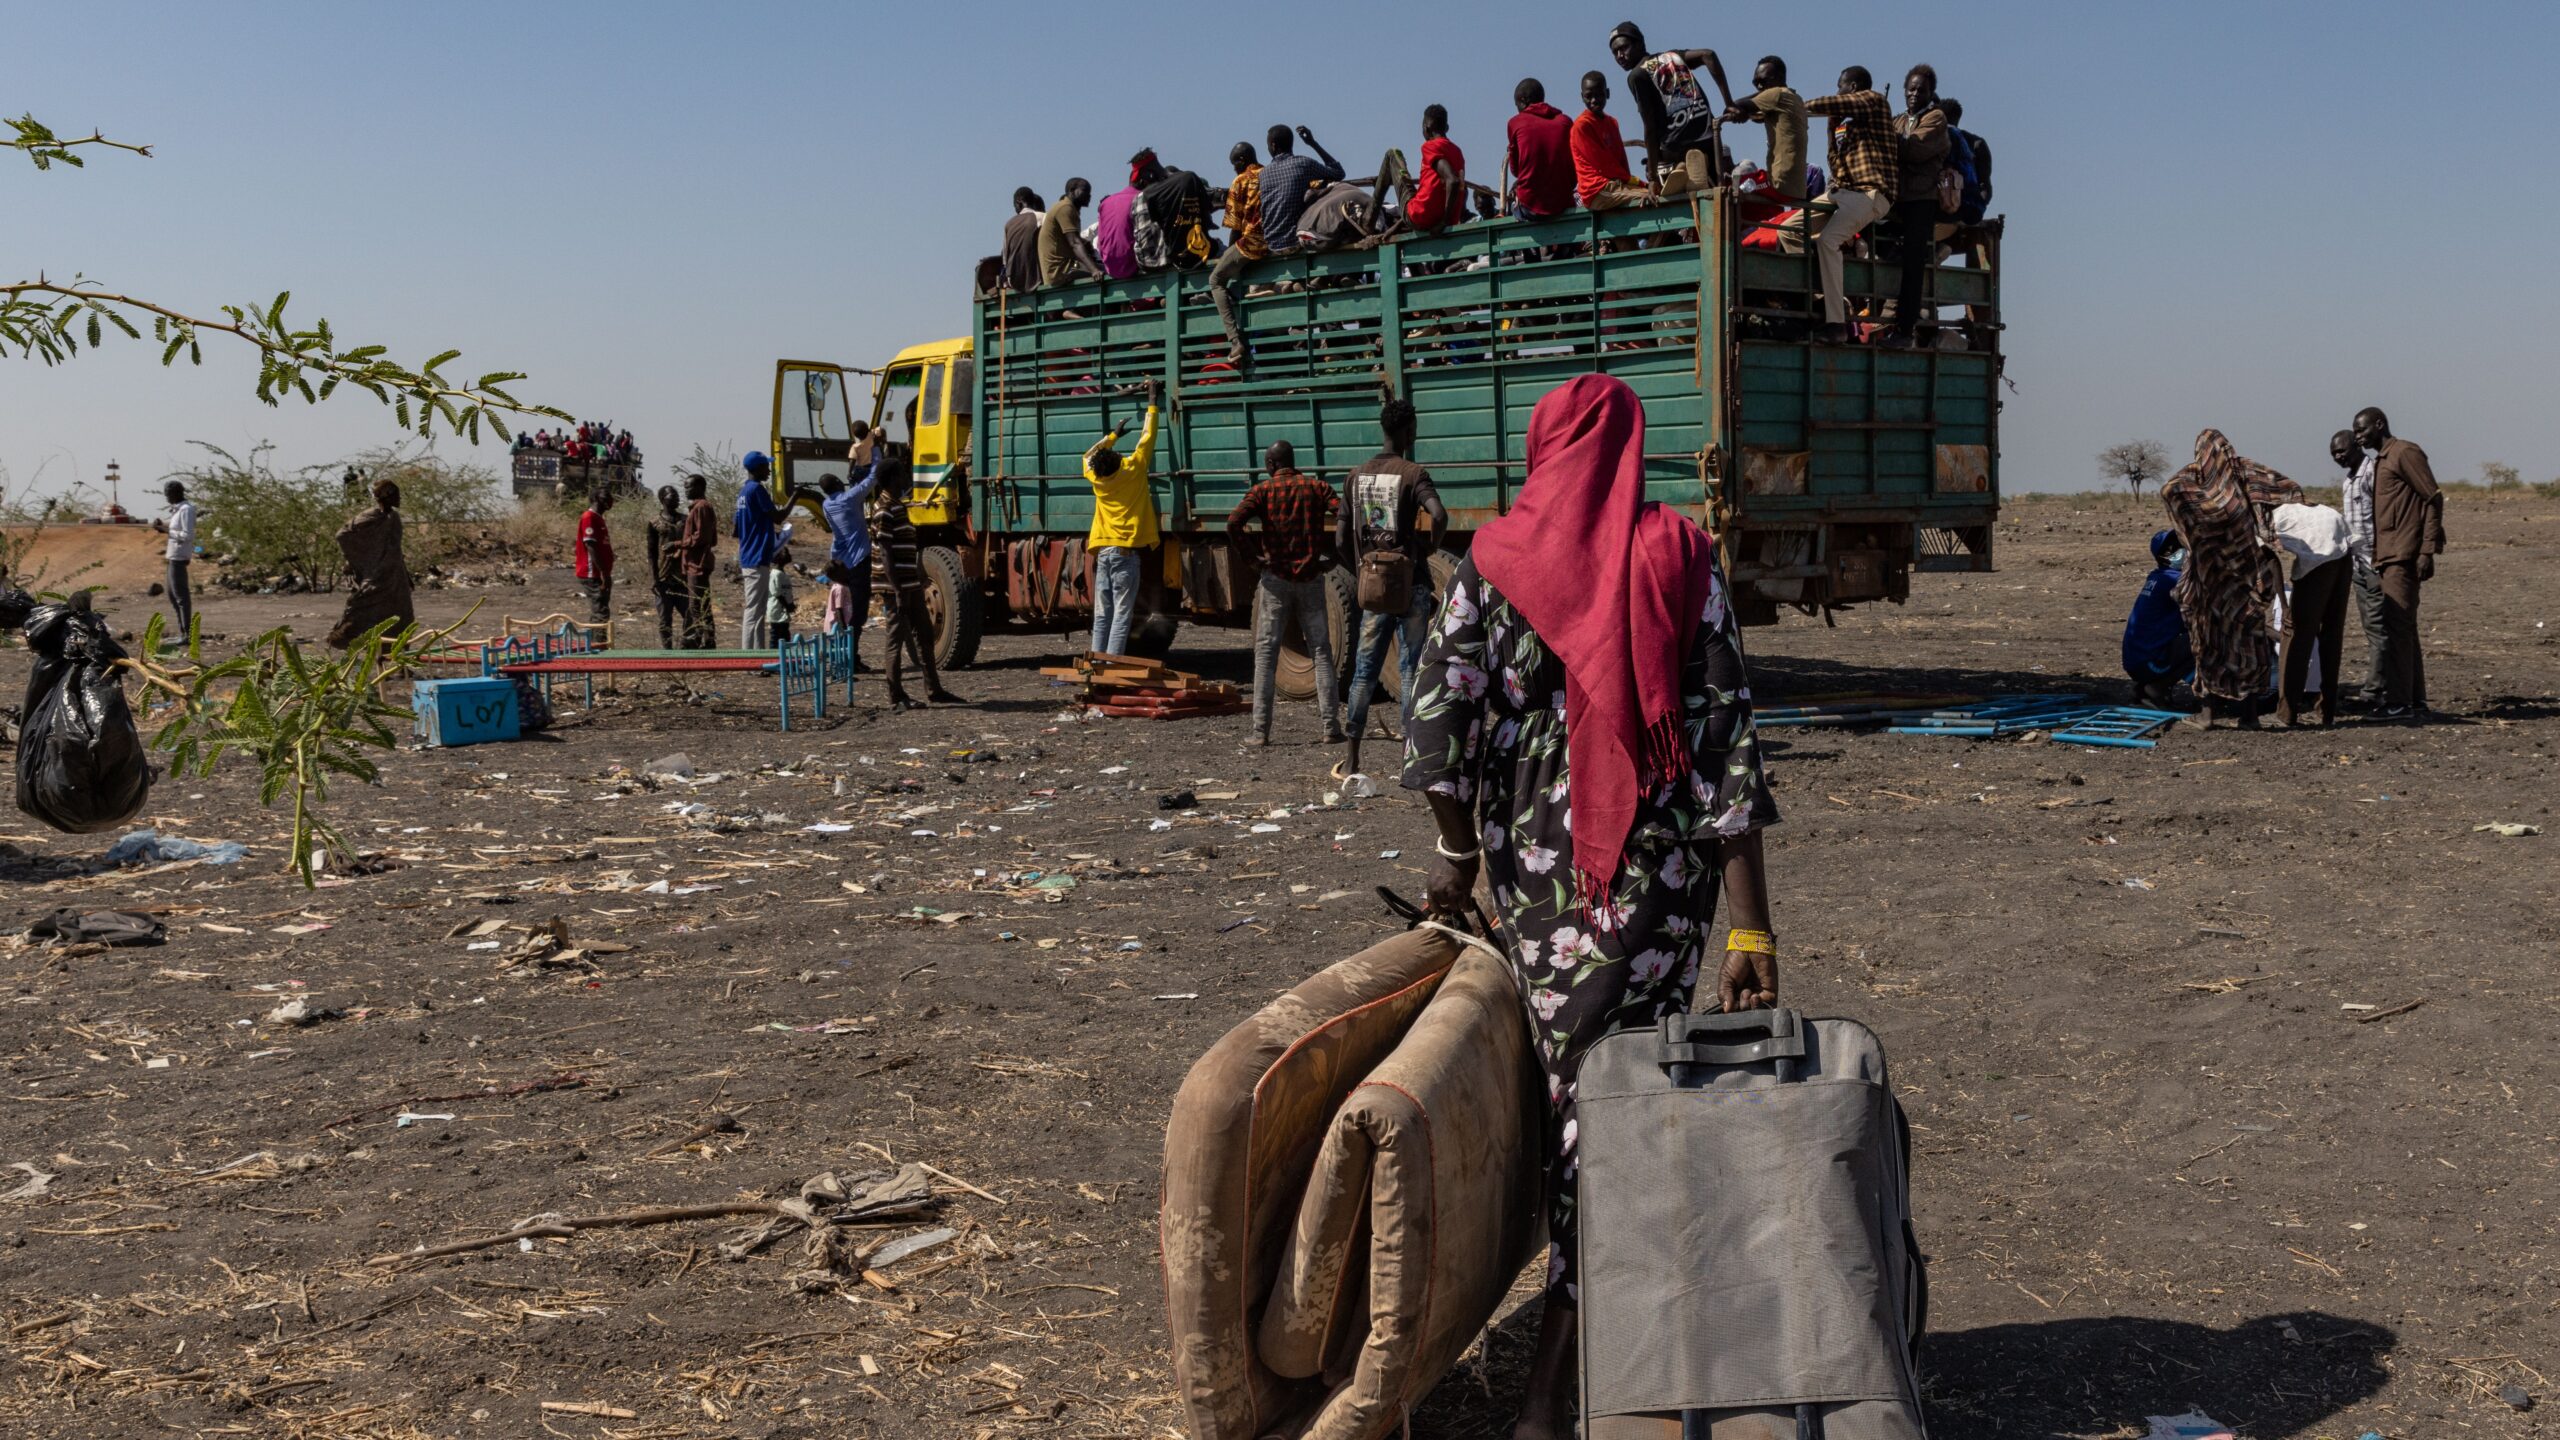 Terugkerende Zuid-Soedanese vluchtelingen en Soedanese vluchtelingen die het conflict in Soedan zijn ontvlucht stappen in in een vrachtwagen aan de grenspost Joda, nabij Renk, Zuid-Soedan. © UNHCR/Andrew McConnell